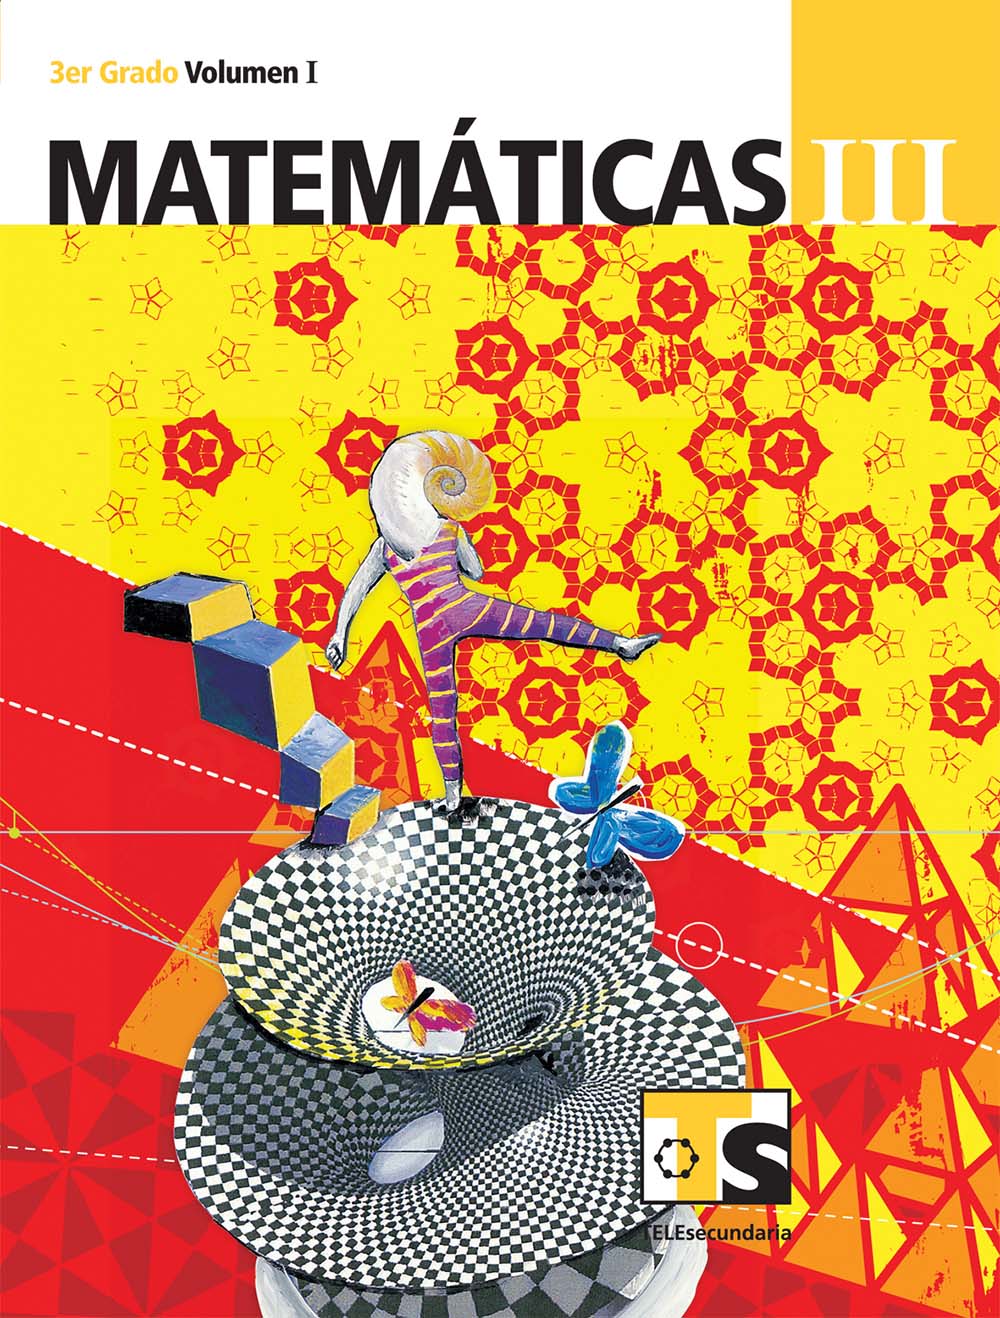 Matematicas III. Vol. I., Editorial: Secretaría de Educación Pública, Nivel: Telesecundaria, Grado: 3